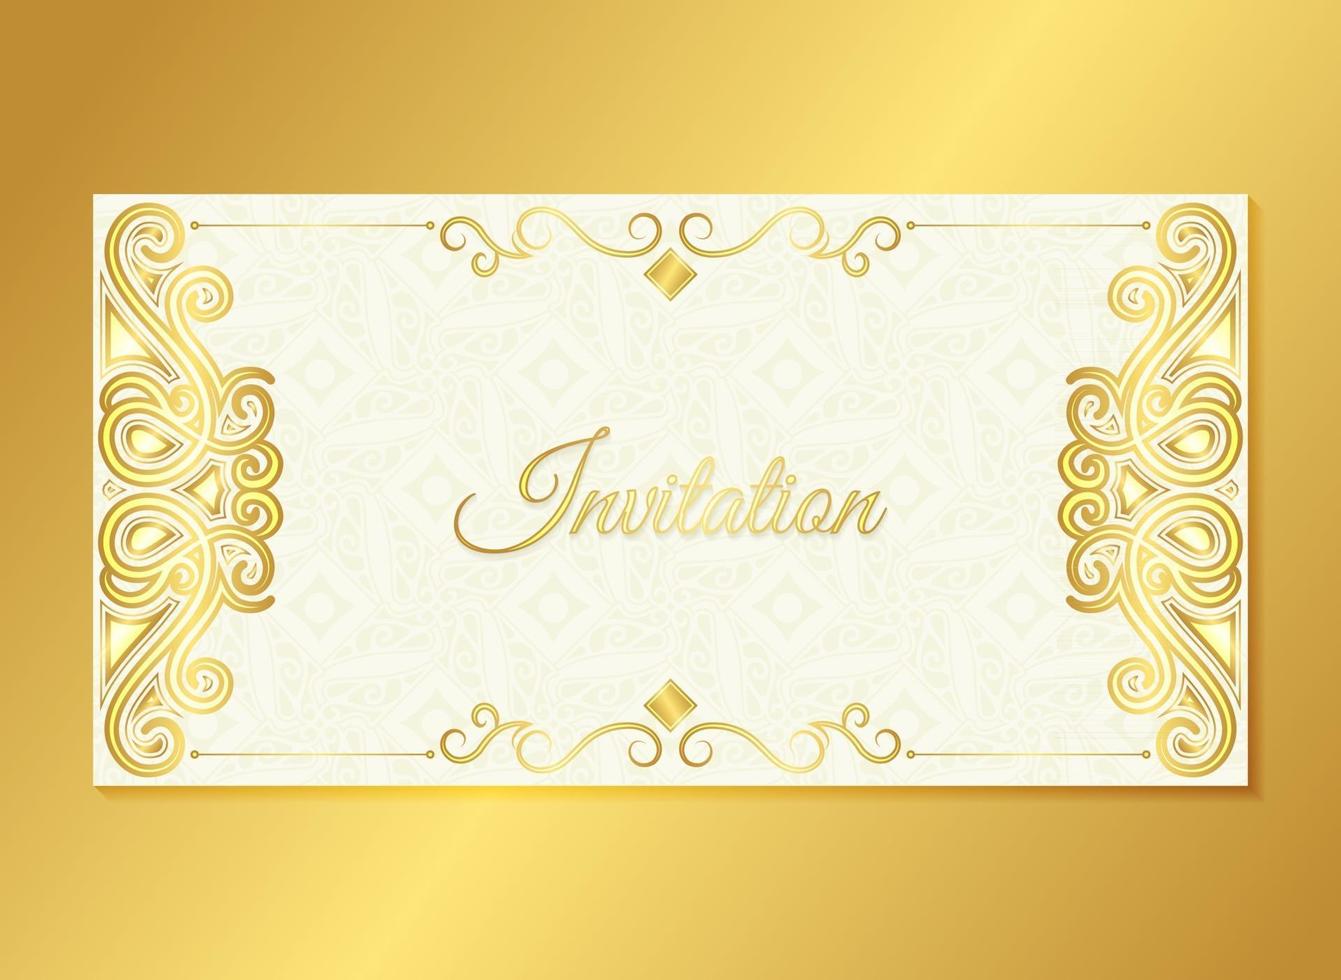 convite dourado estilo de fundo padrão ornamental vetor